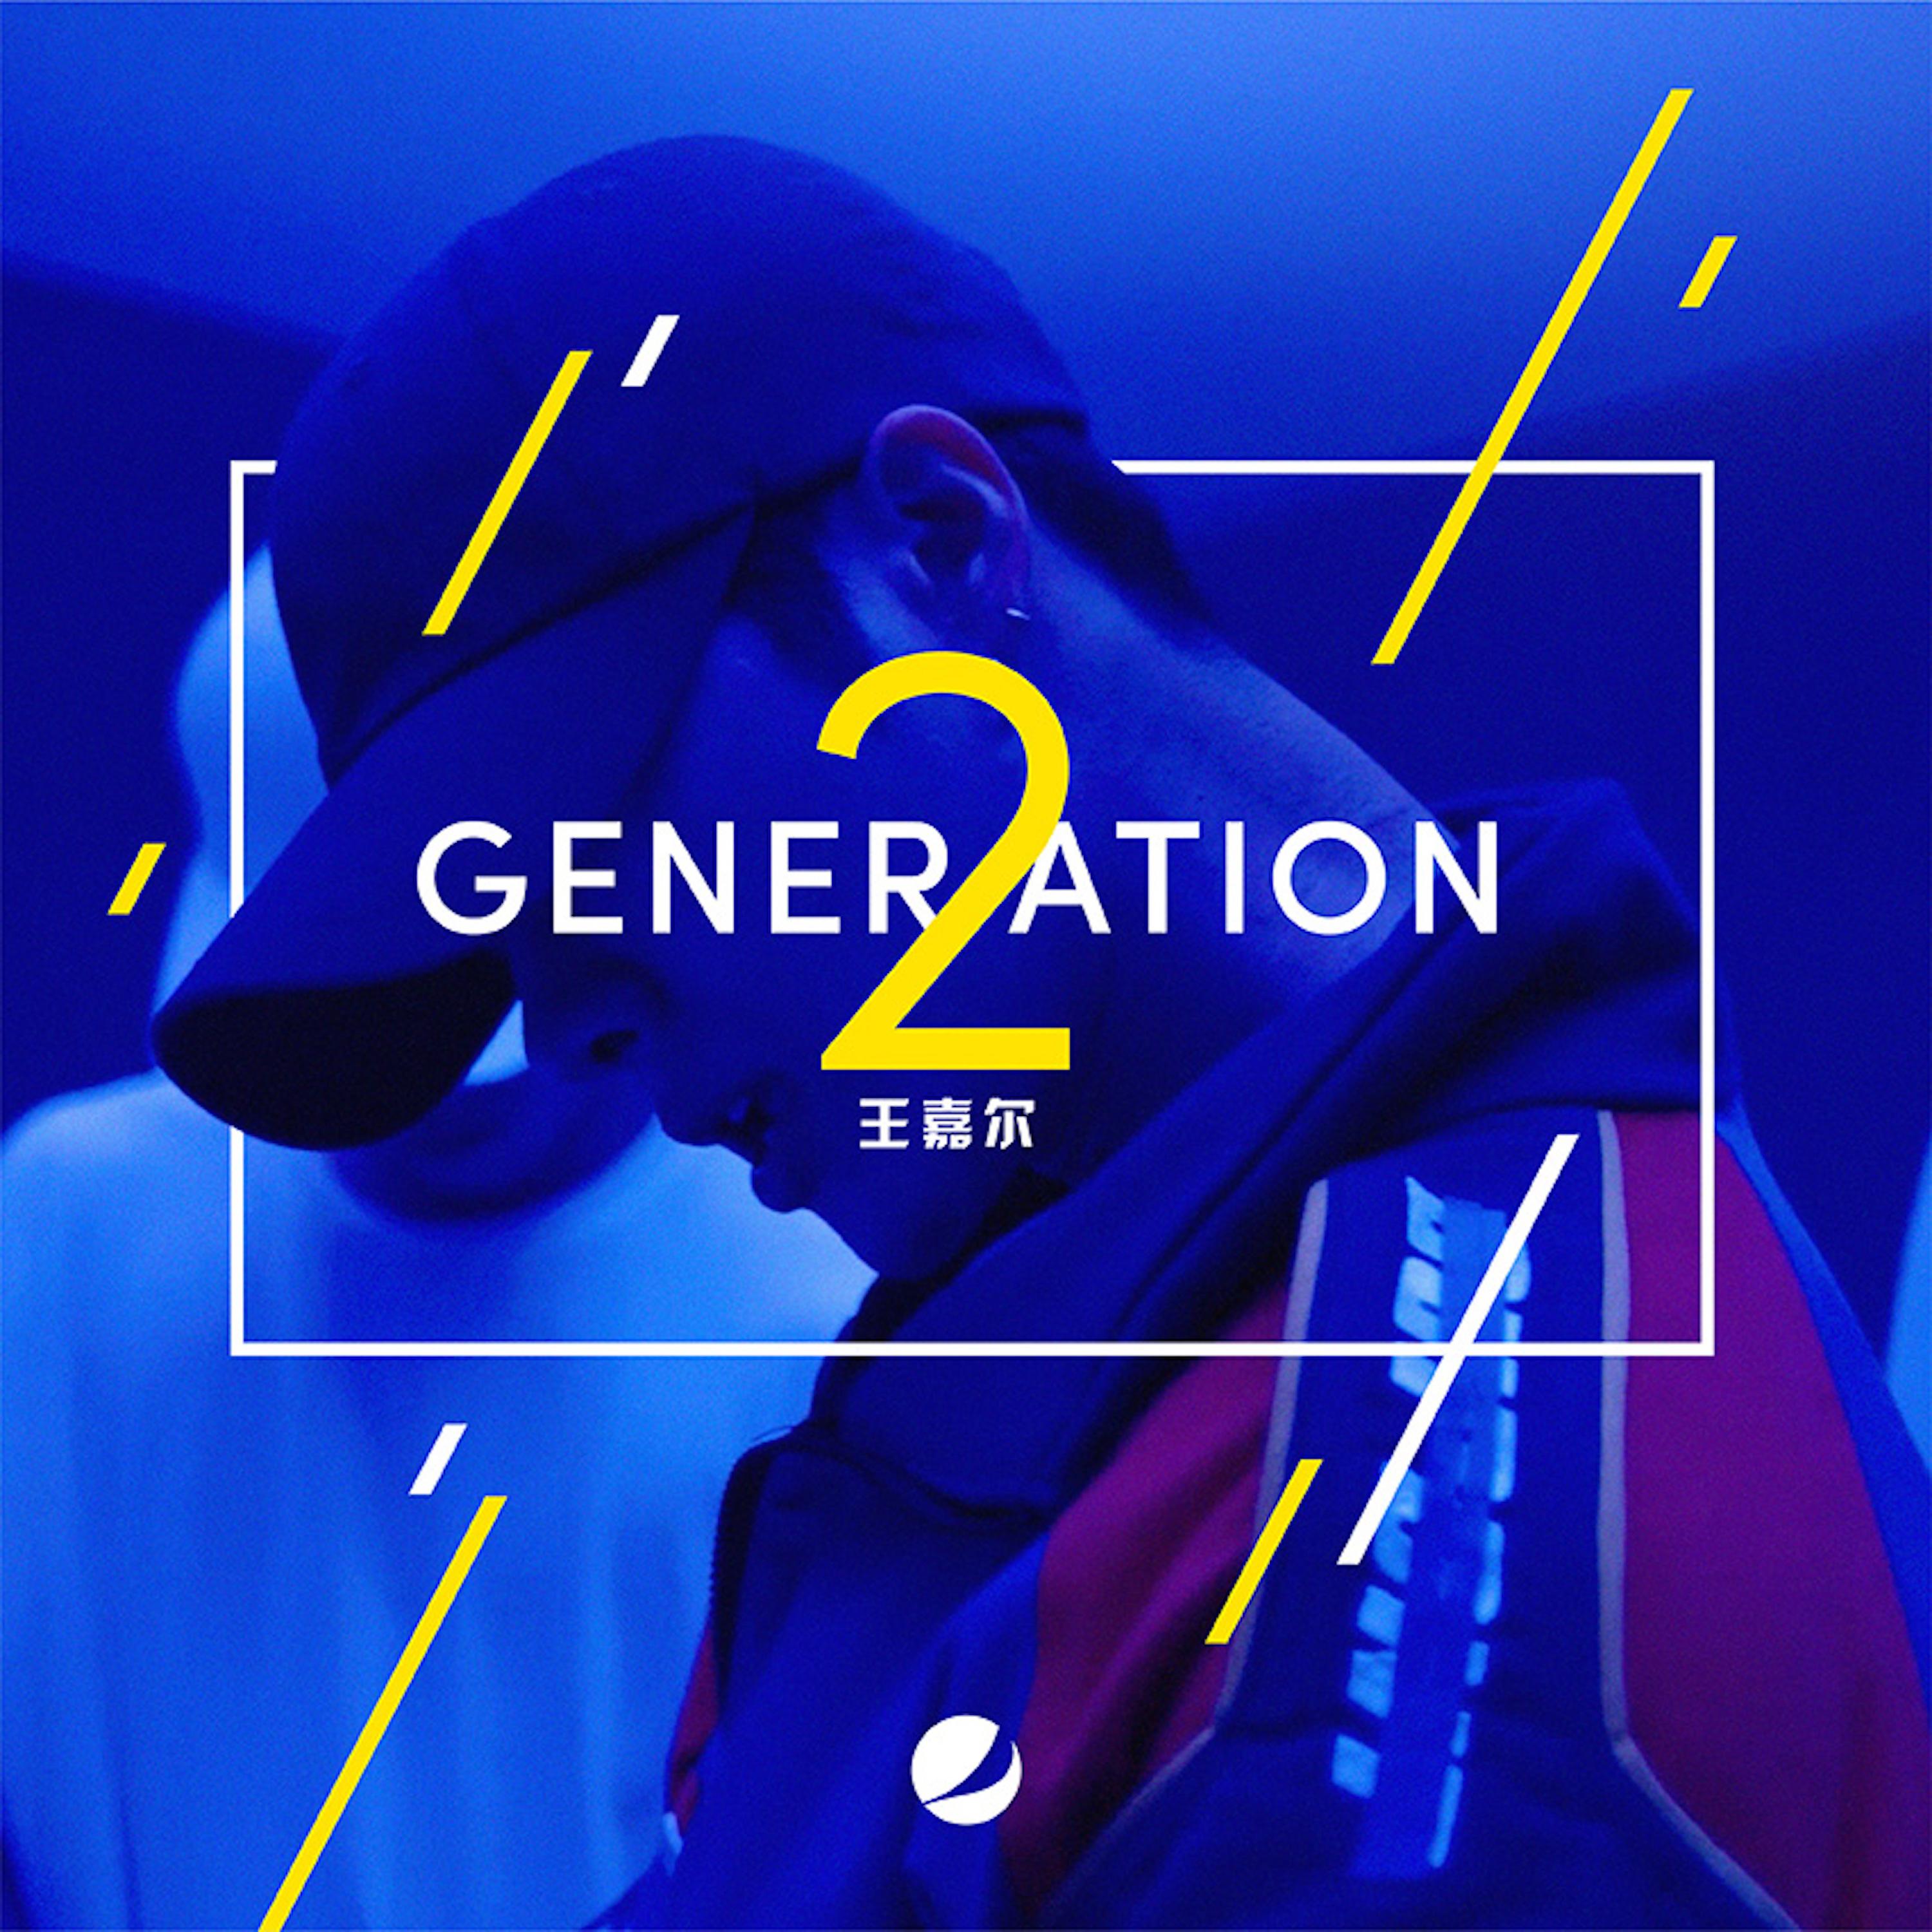 Generation 2歌词 歌手王嘉尔-专辑Generation 2-单曲《Generation 2》LRC歌词下载